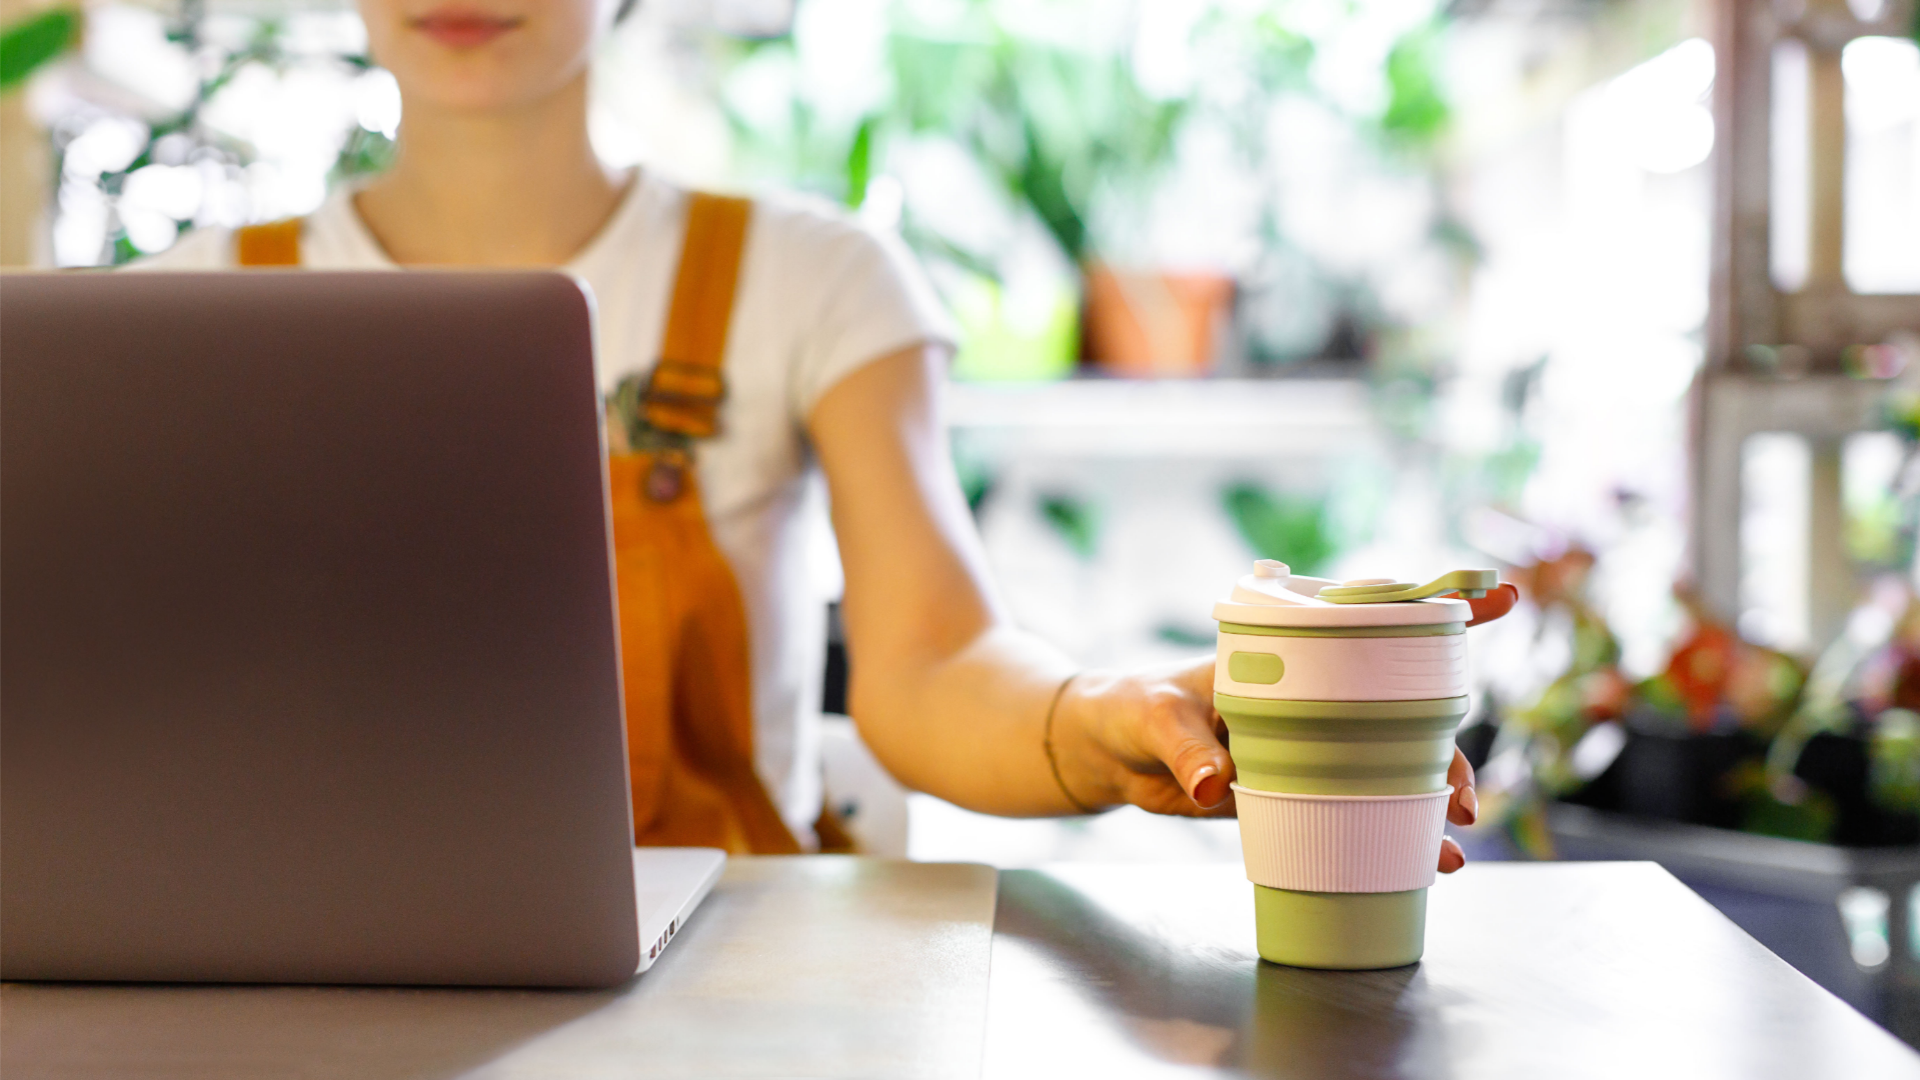 Women at laptop using a reusable mug